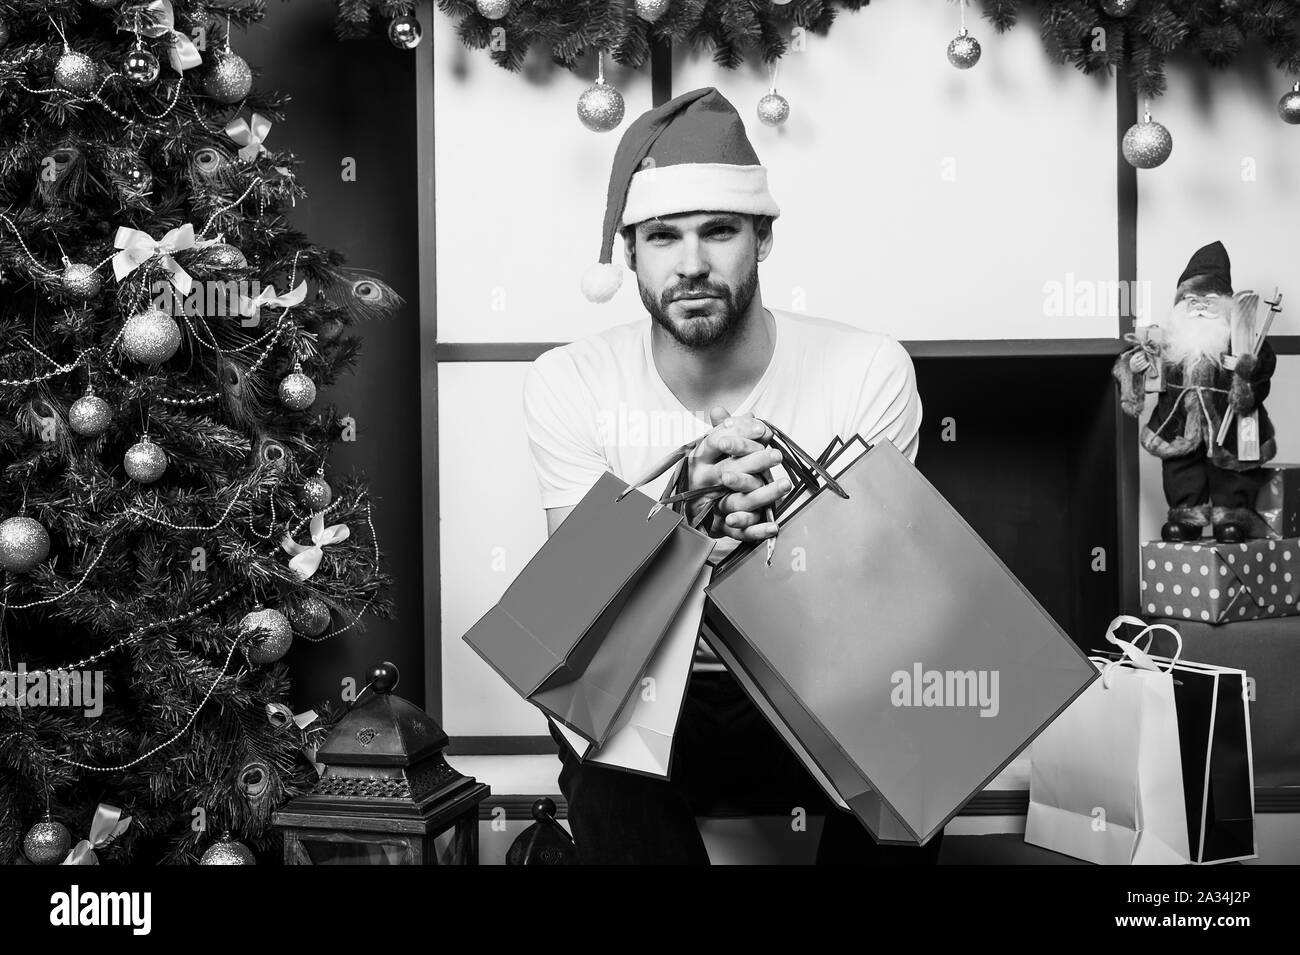 Entrega regalos de navidad Imágenes de stock en blanco y negro - Alamy